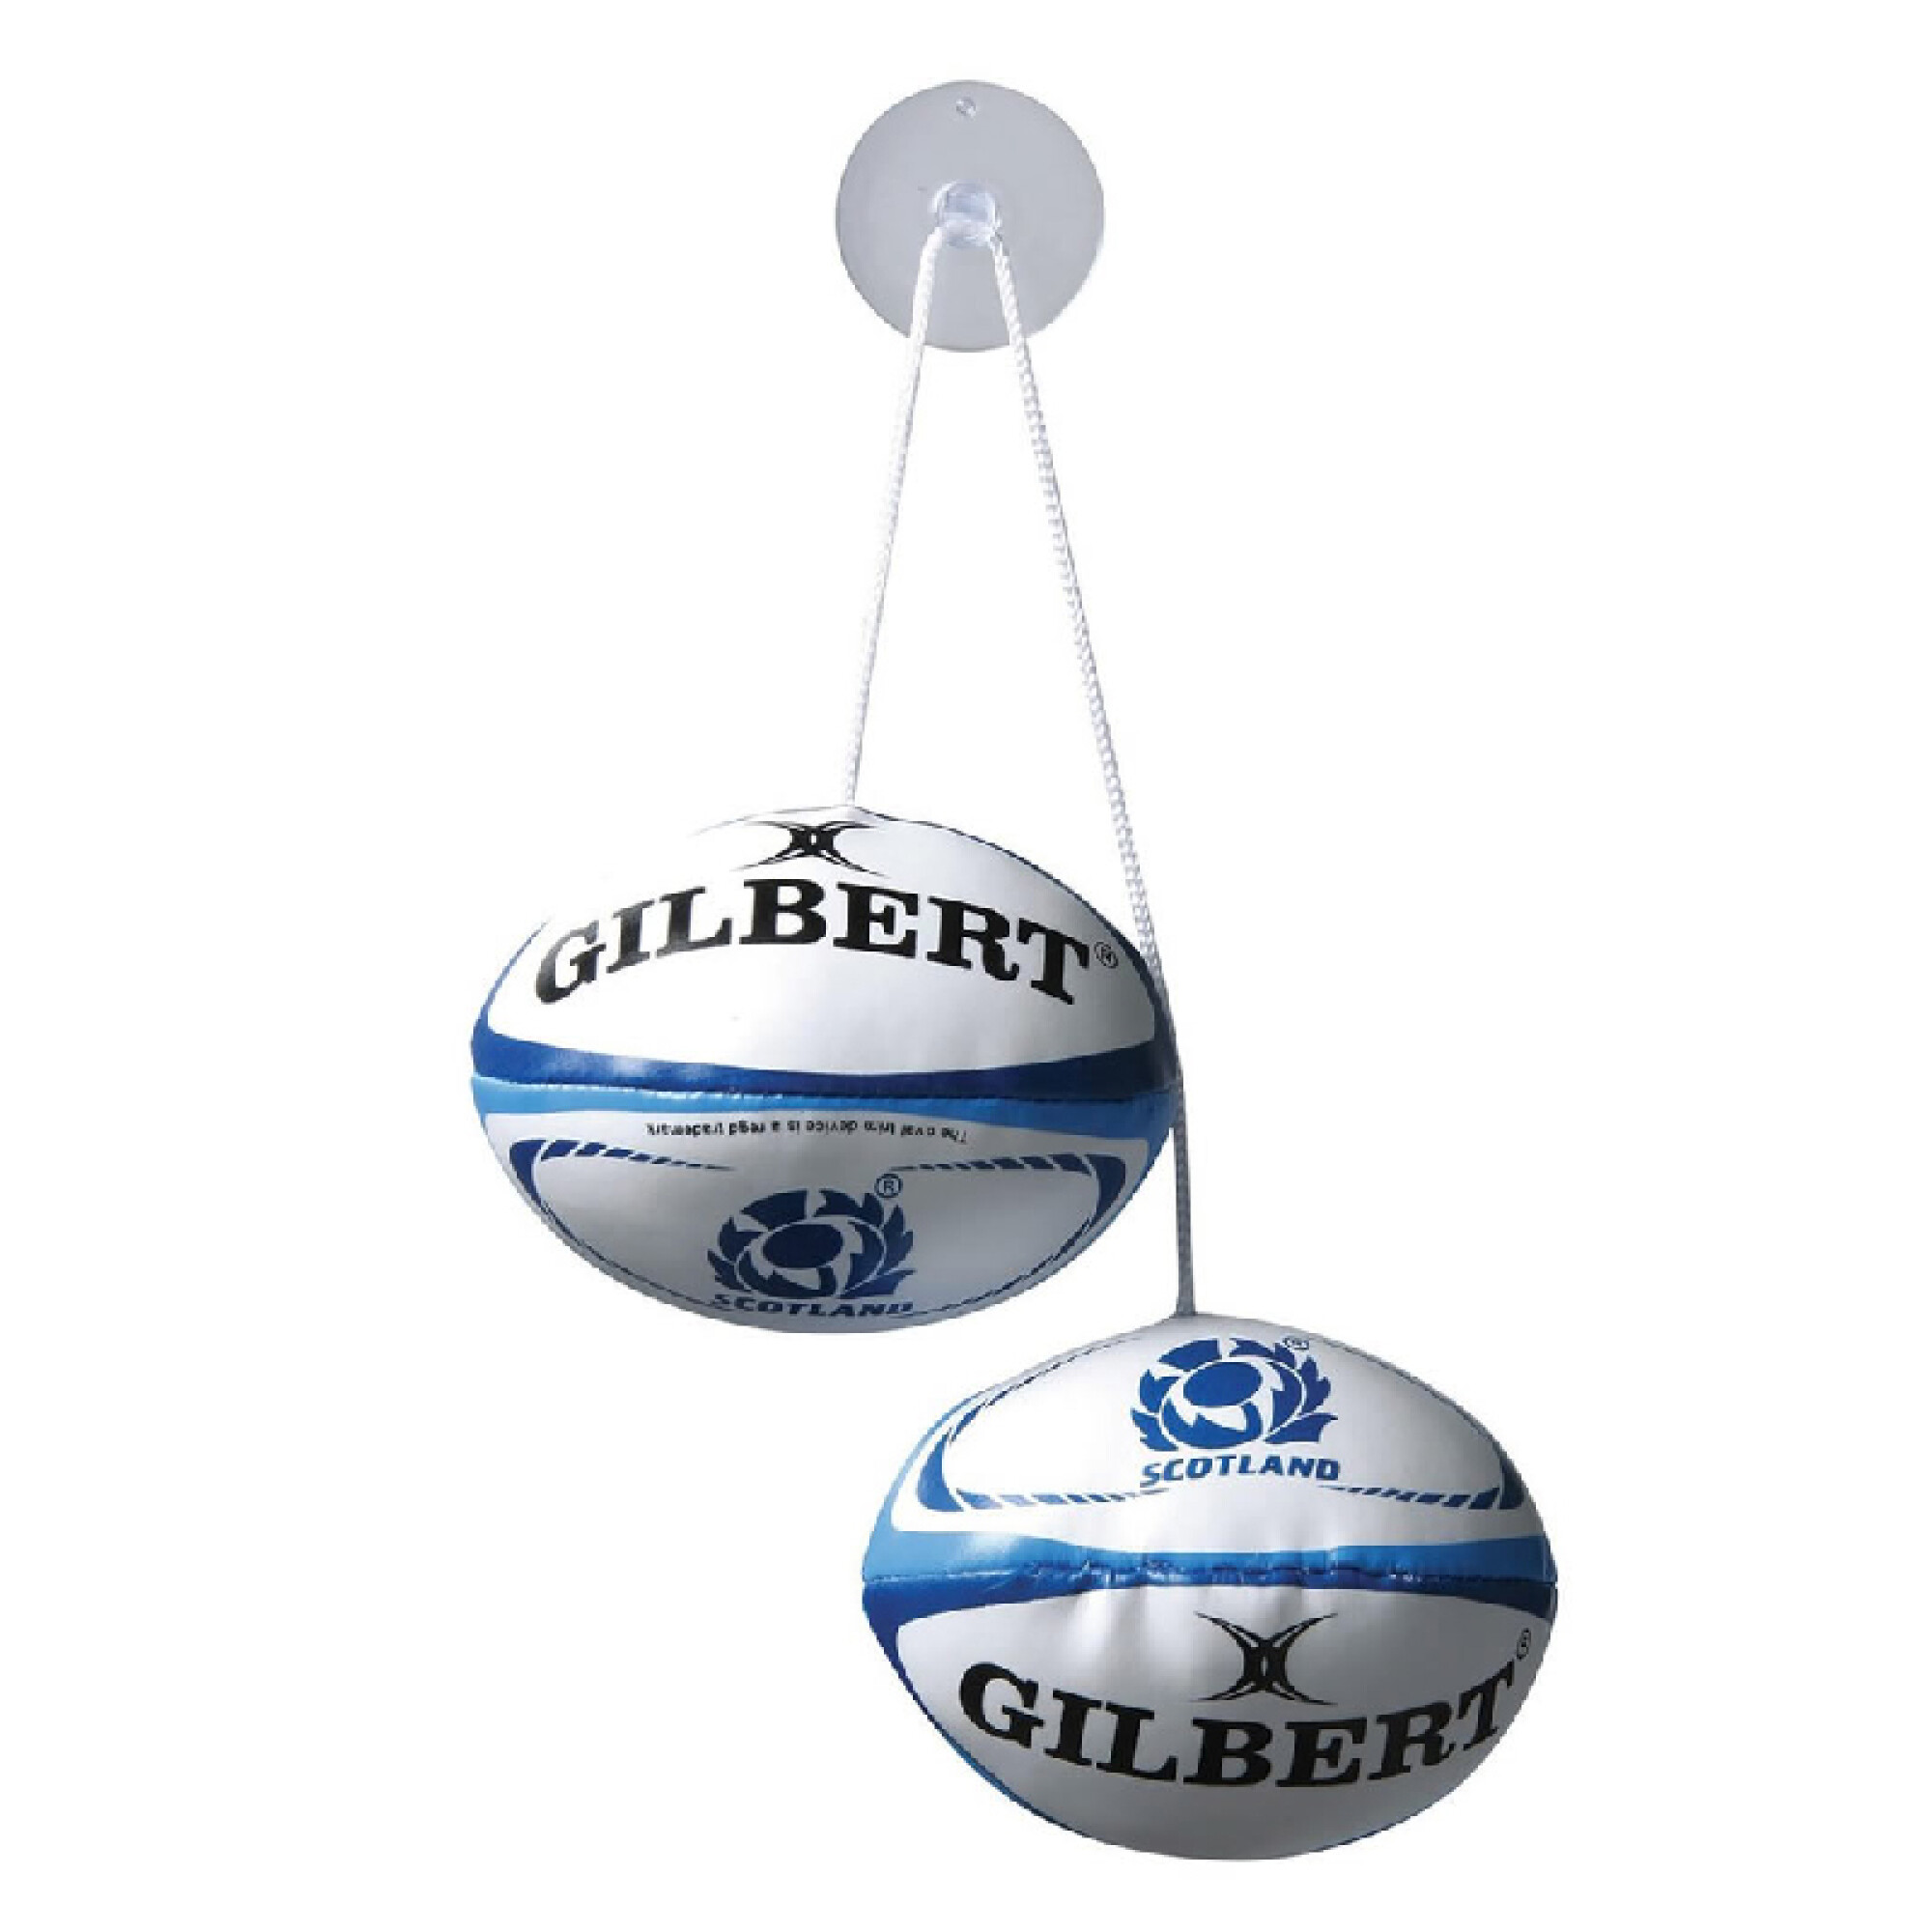 Adorno pelotas de Rugby Gilbert - Escocia — BTU Store